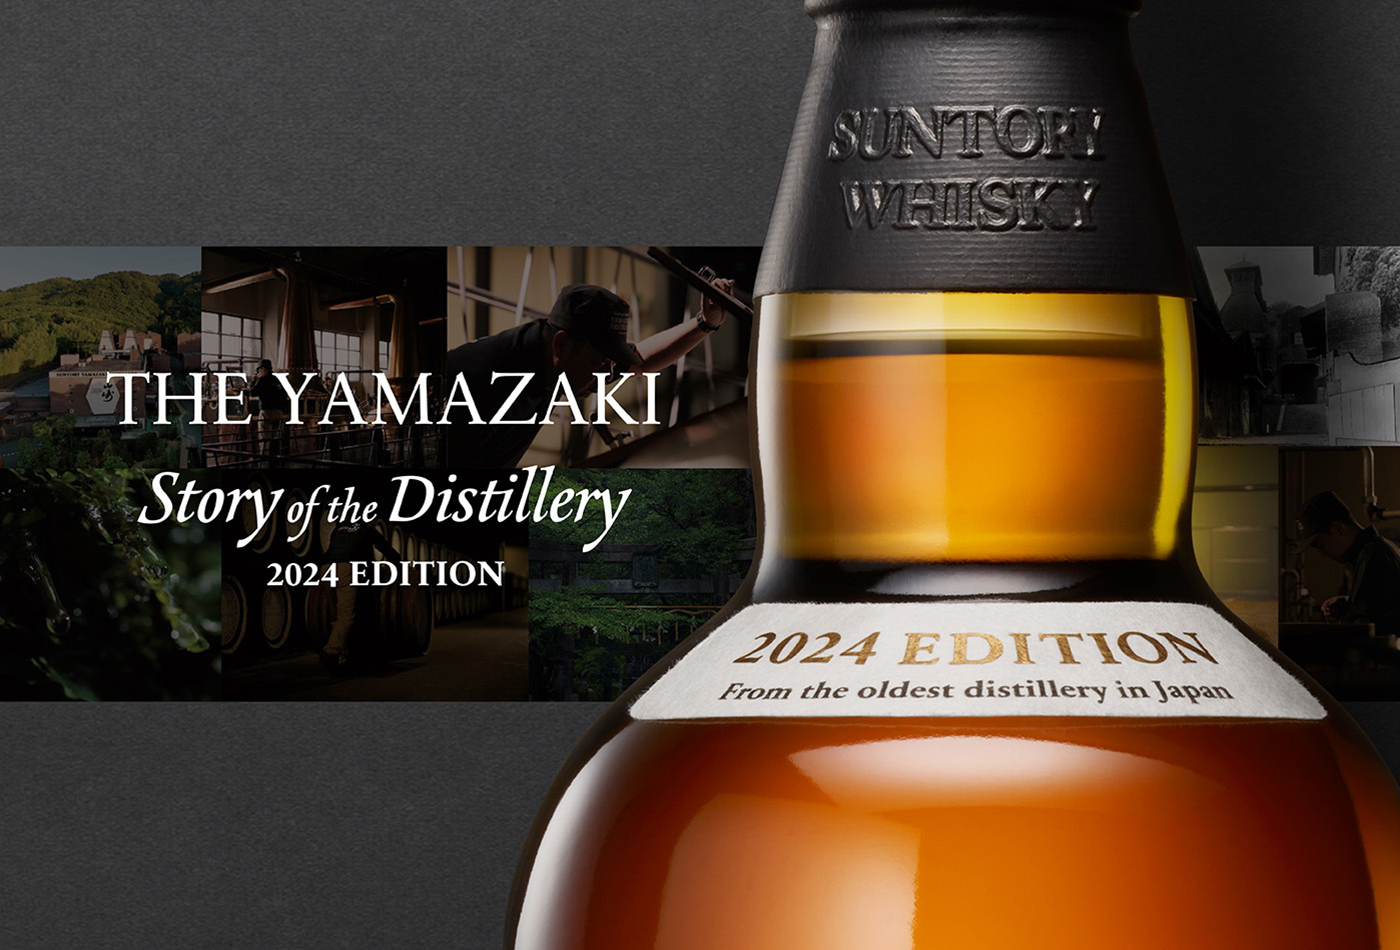 シングルモルトウイスキー 山崎 Story of the Distillery 2024 EDITION ボトルの上部ラベル部分に寄った画像。ラベルには「2024 EDITION From the oldest distillery in Japan」と書かれている。